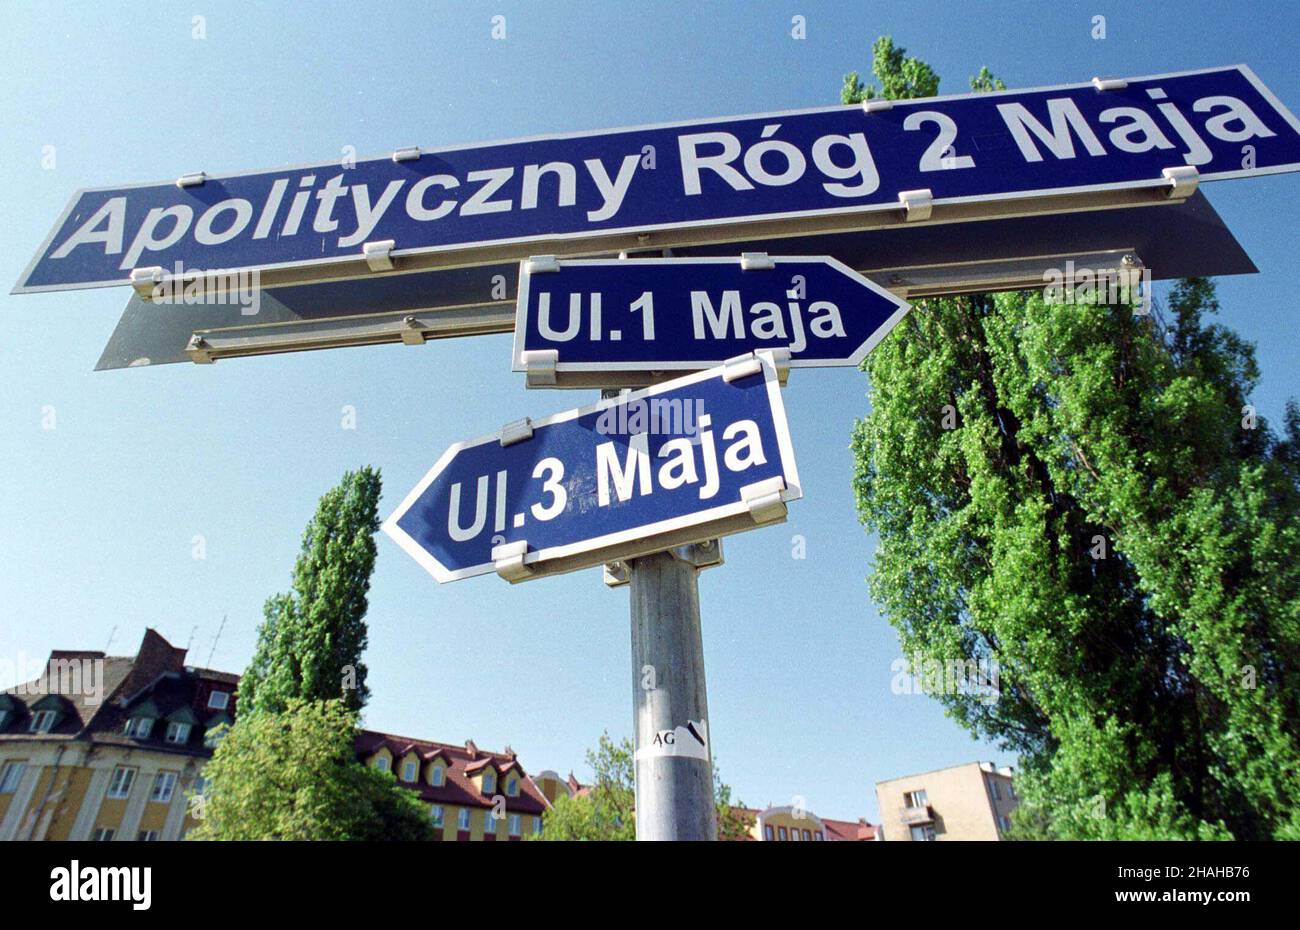 Elbl¹g, 03.05.2000. Elbl¹g jest jedynym w Polsce miastem, w którym krzy¿uj¹ siê ulice 1-go i 3-go Maja. Miejsce ich przeciêcia posiada tak¿e swoj¹ nazwê - Apolityczny Róg 2 Maja. (mr) PAP/Stefan Kraszewski     Elblag, 03.05.2000. Elblad in the only city in Poland, where crosses Streets of 1st and 3rd May. The crossing also has its name - An Apolitical Corner of 2nd May. (mr) PAP/Stefan Kraszewski Stock Photo